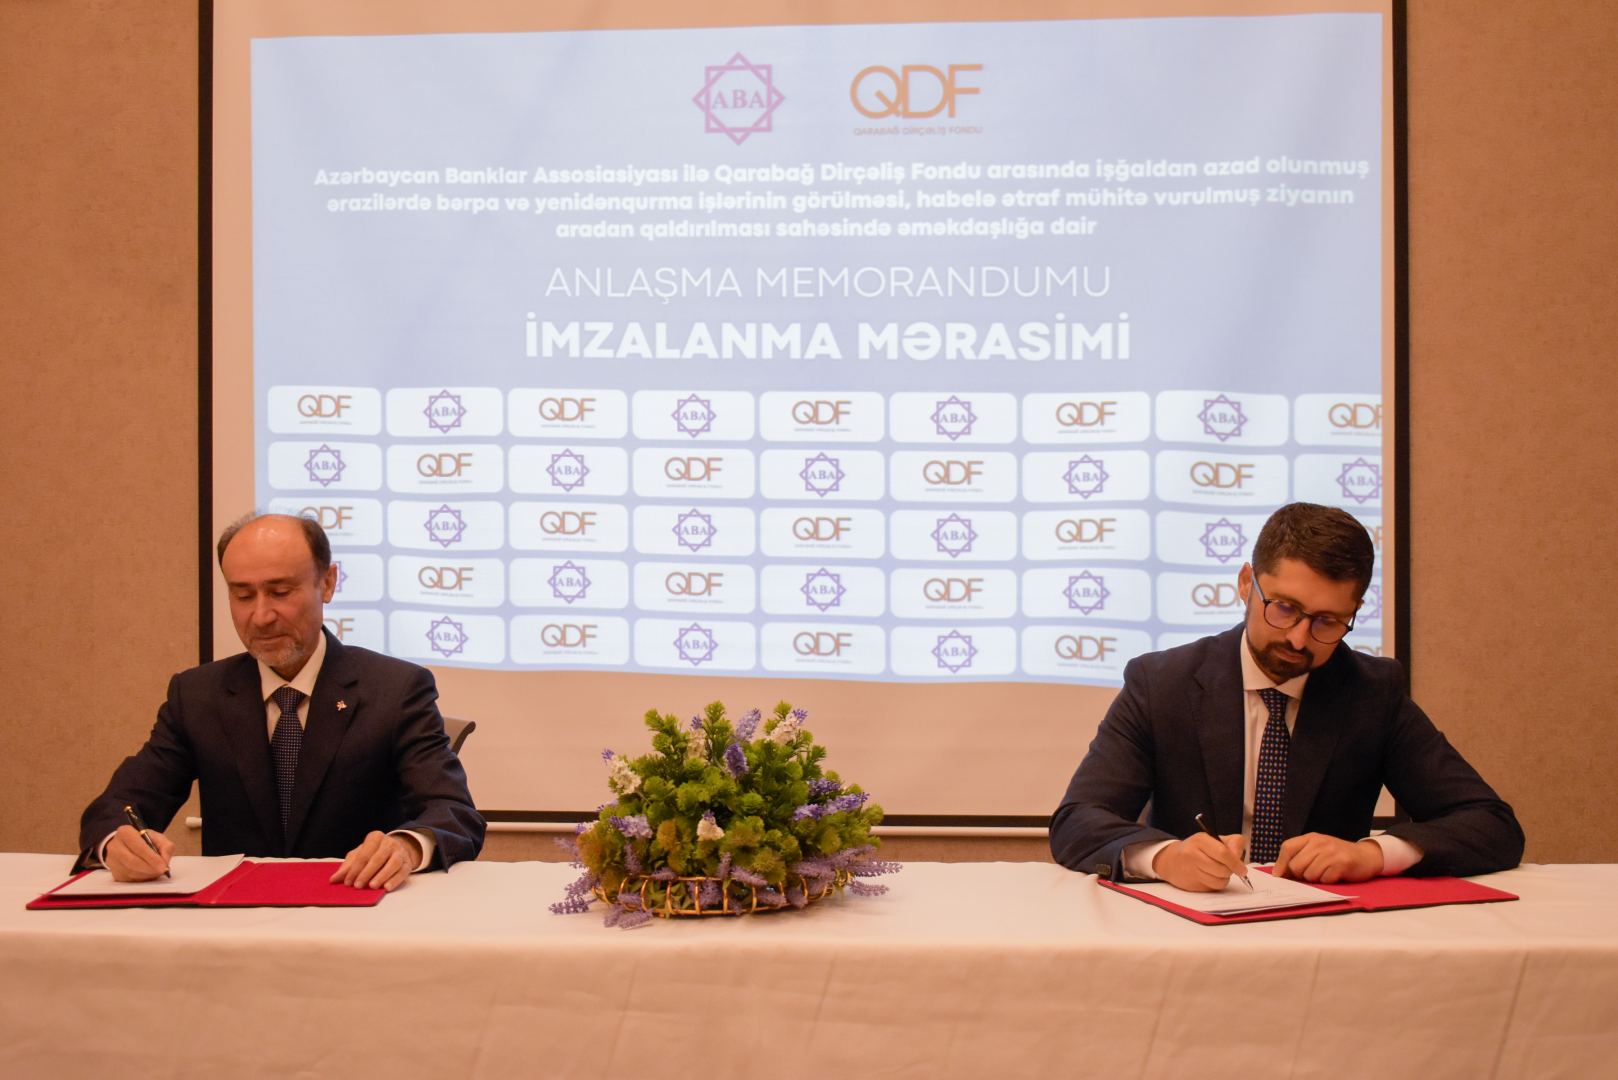 Azərbaycan Banklar Assosiasiyası və Qarabağ Dirçəliş Fondu əməkdaşlığa başlayıb (FOTO)